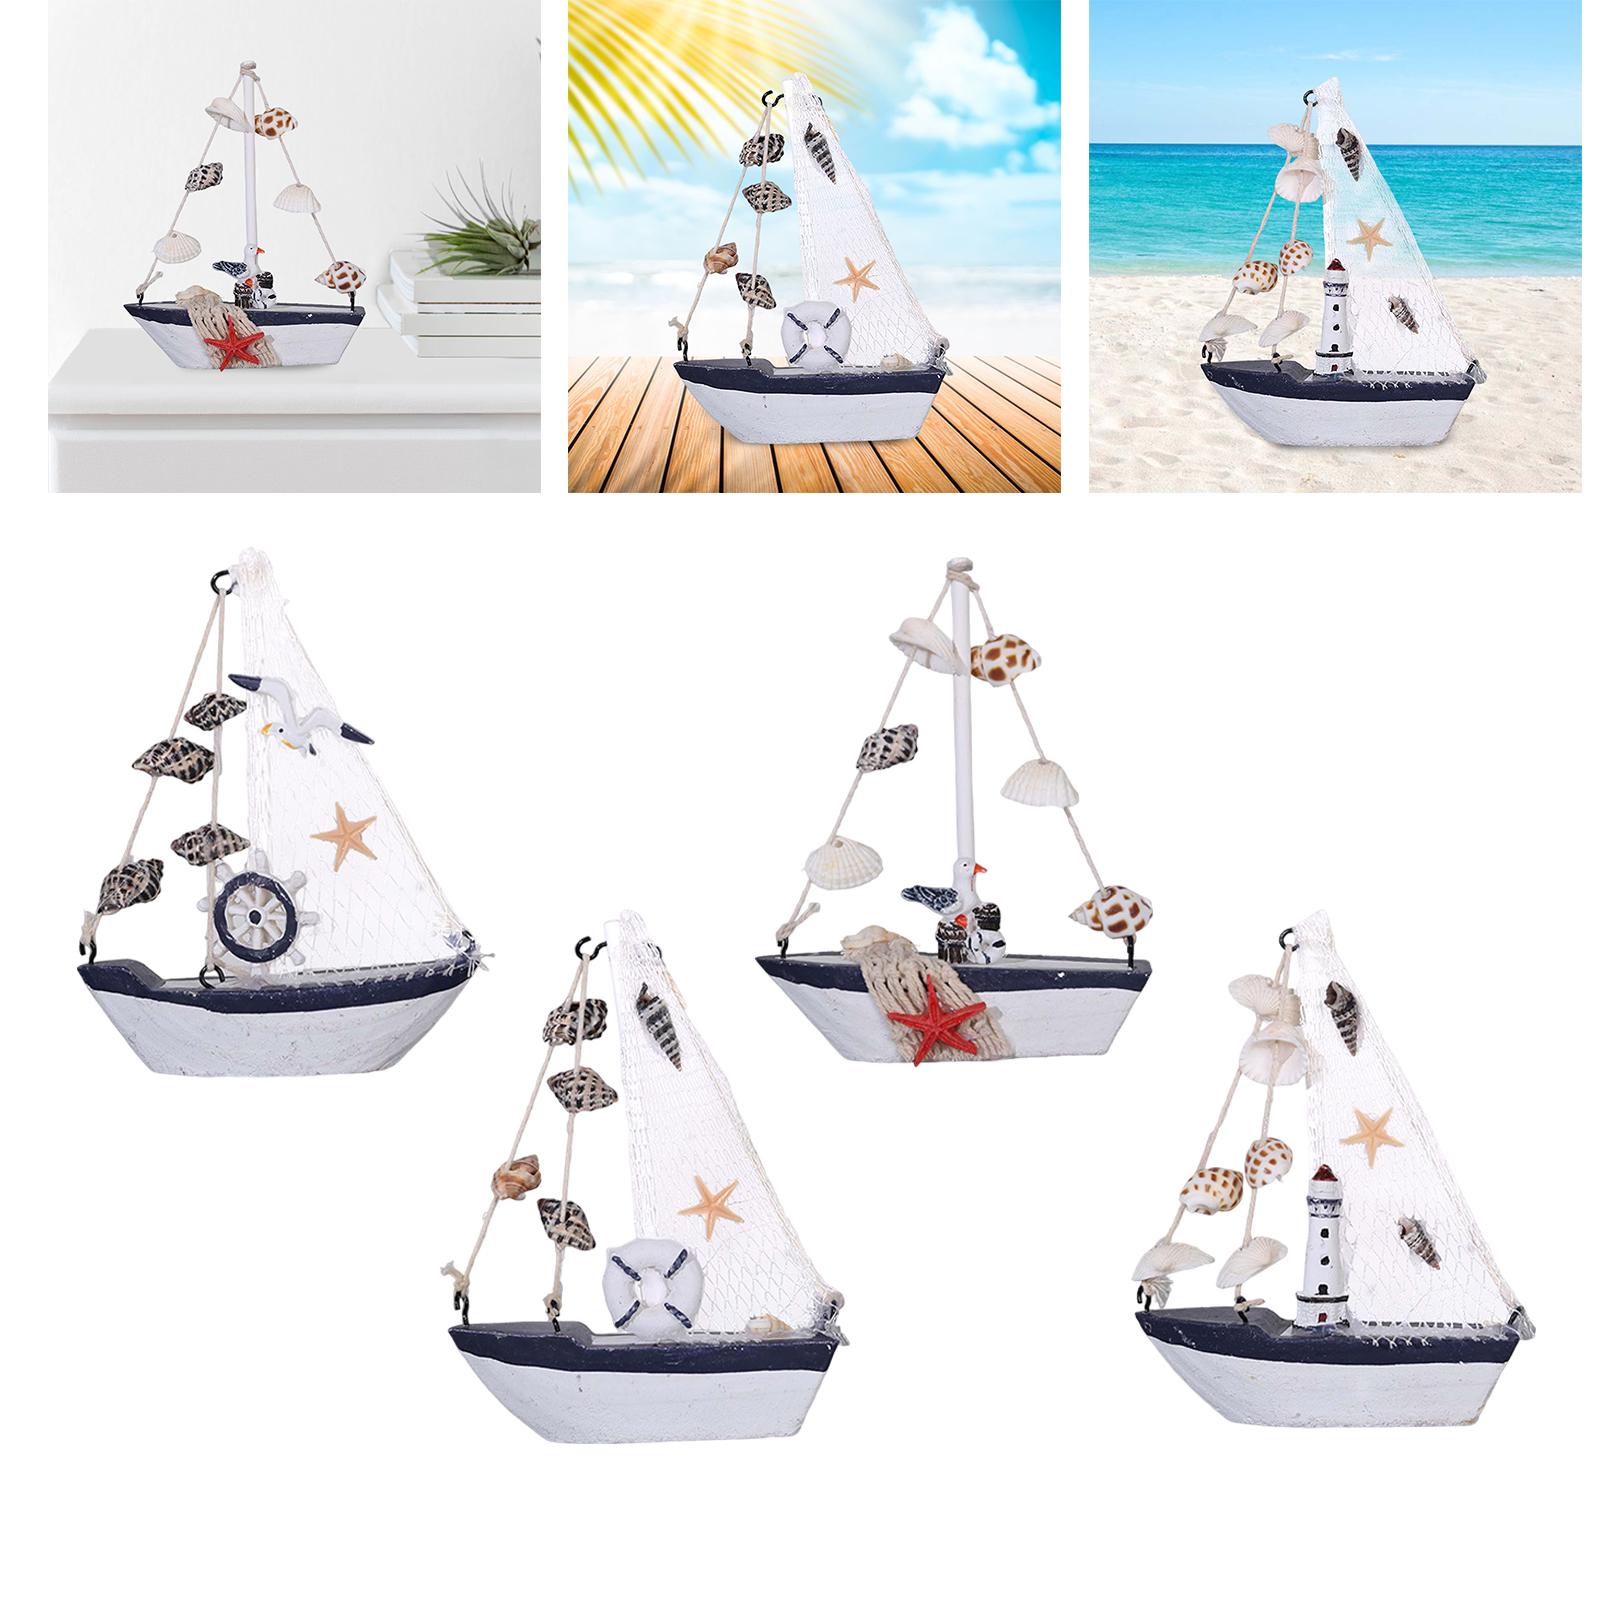 Sailboat Model Decor Ornament Wooden Sailing Boat Lightweight for Desk Rudder